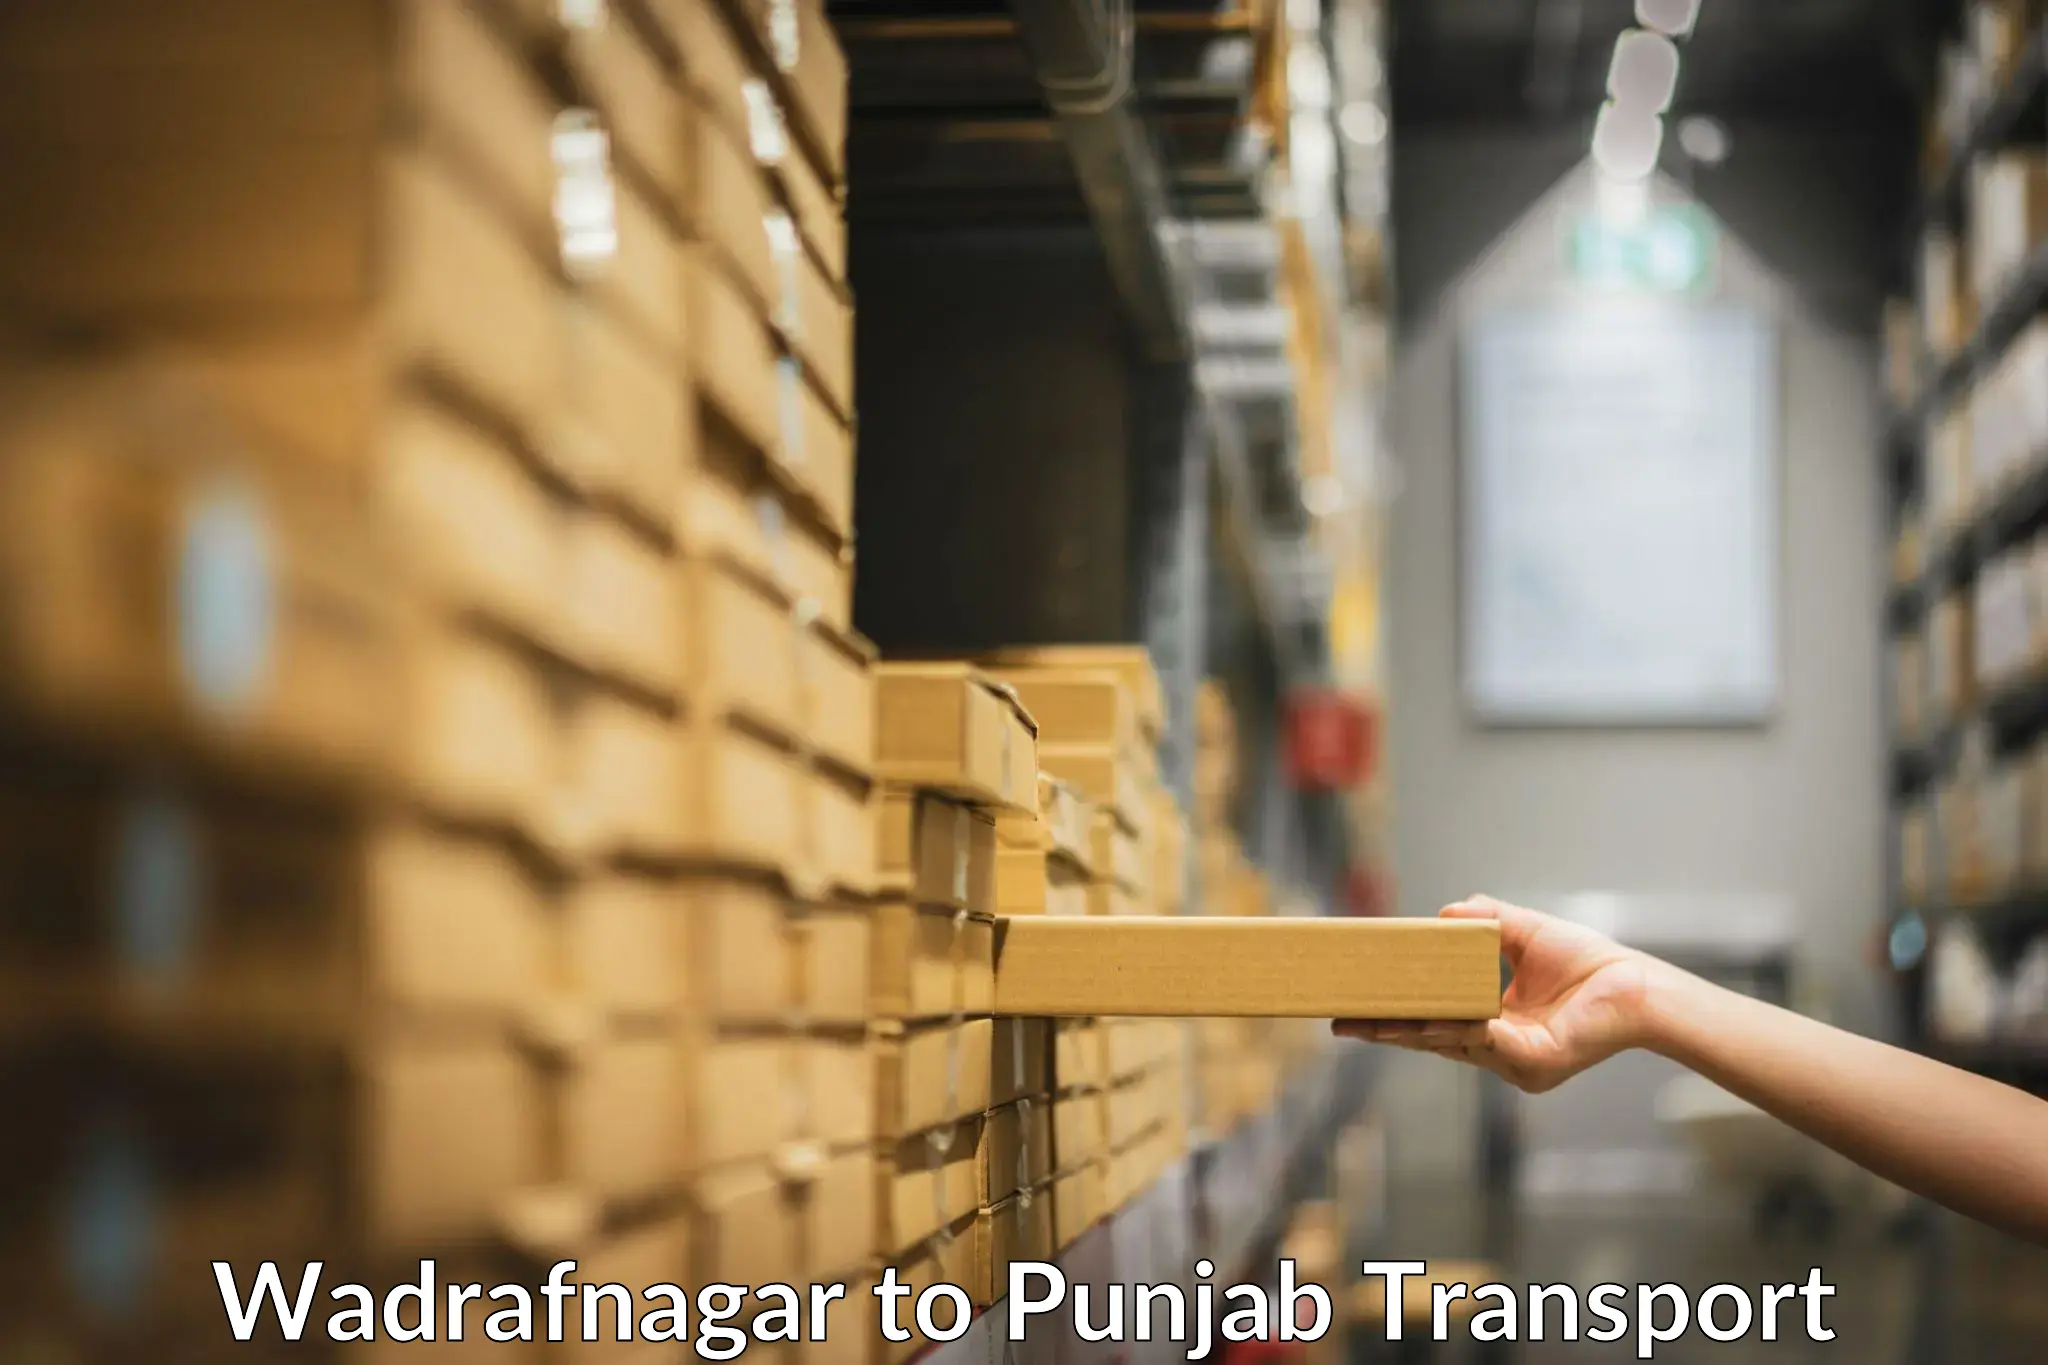 Logistics transportation services Wadrafnagar to Jalalabad